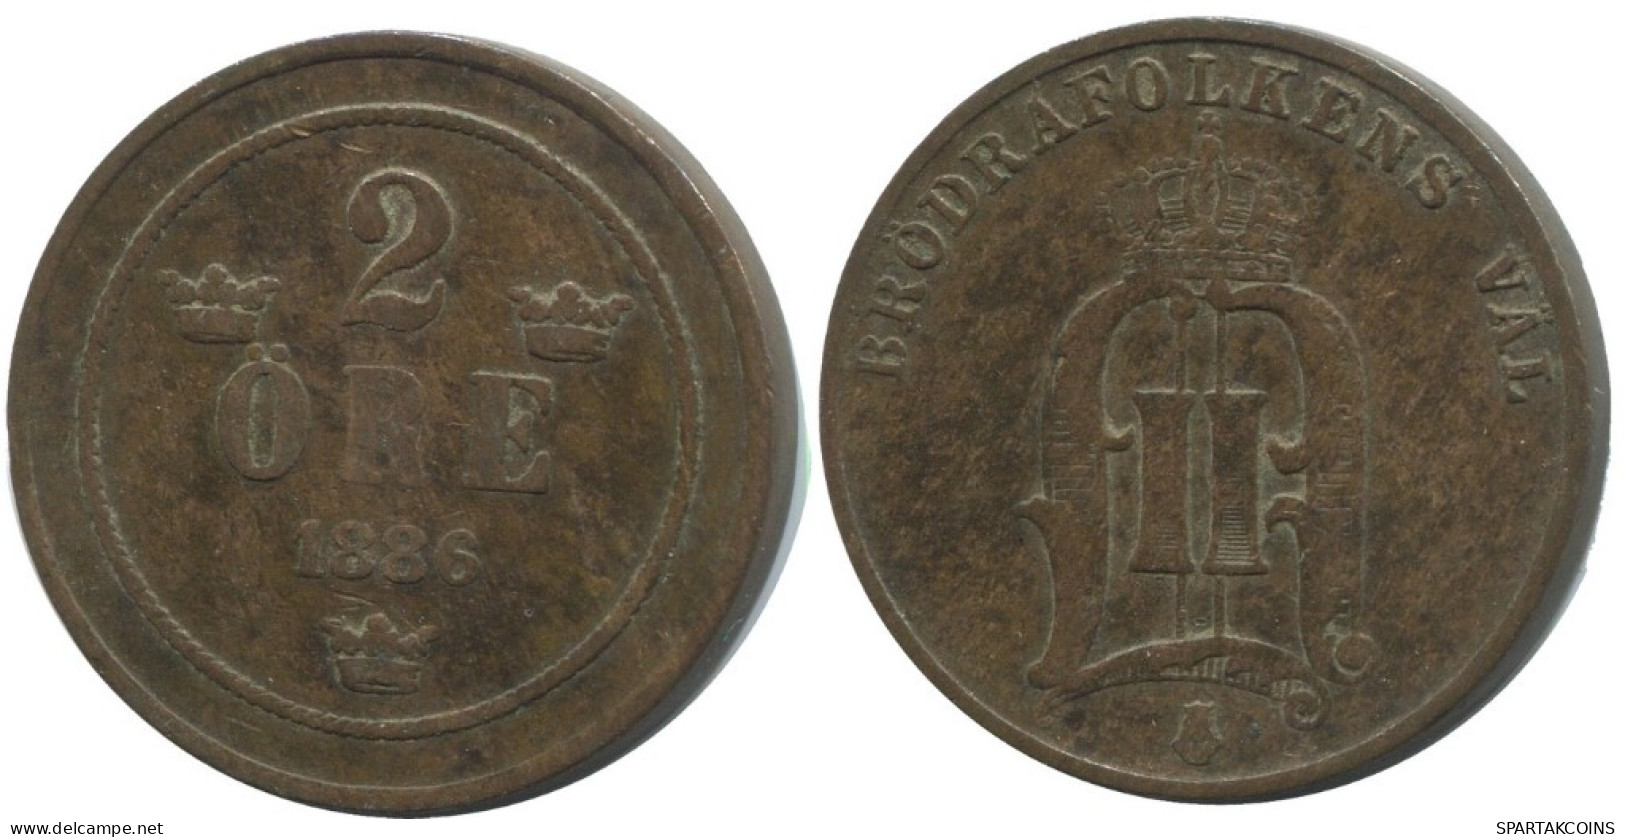 2 ORE 1886 SWEDEN Coin #AC900.2.U.A